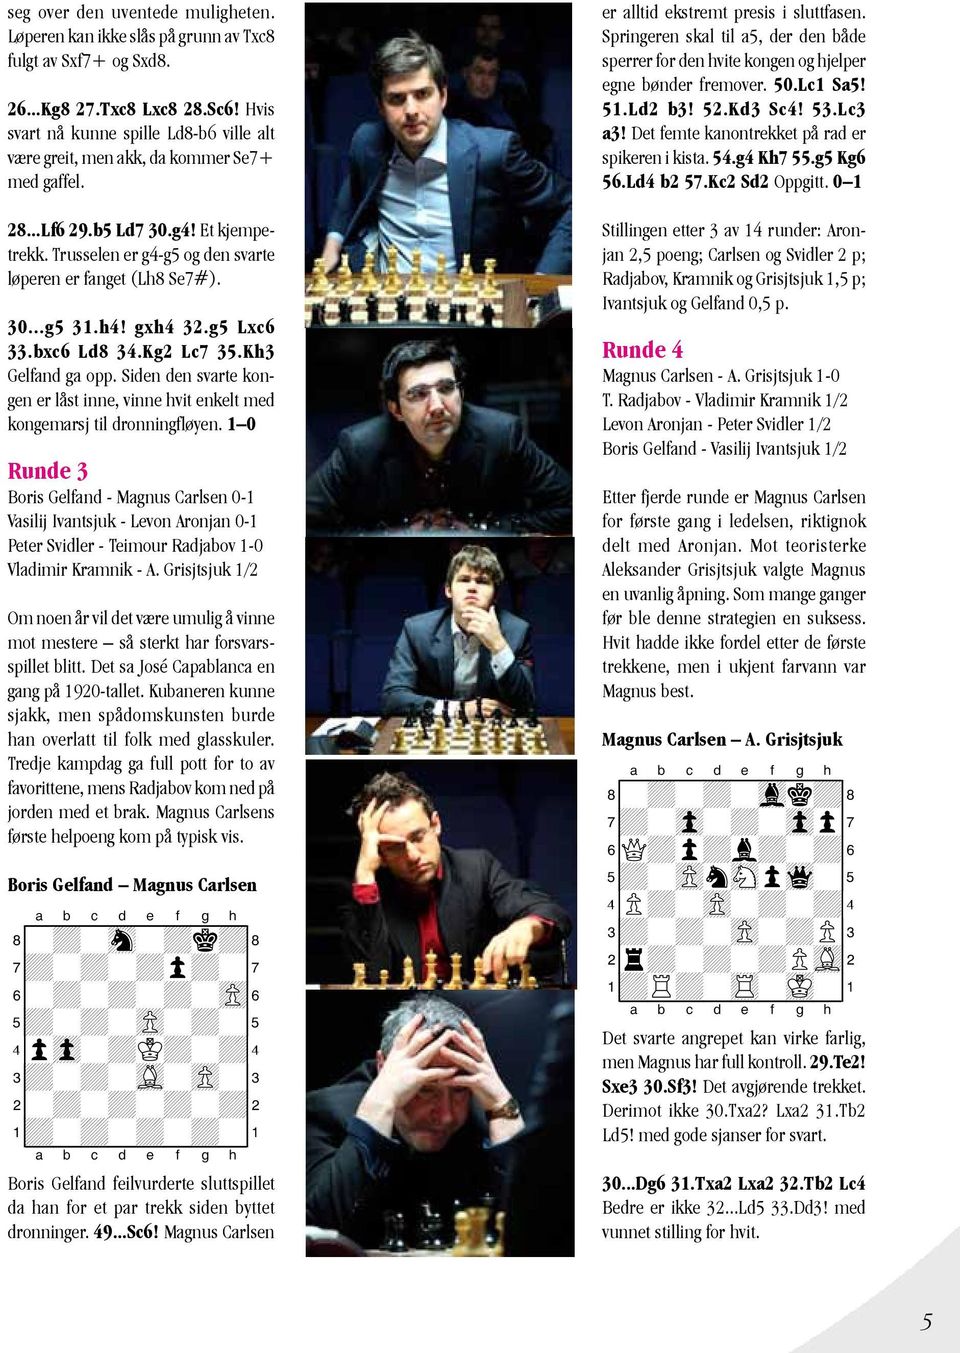 h4! gxh4 32.g5 Lxc6 33.bxc6 Ld8 34.Kg2 Lc7 35.Kh3 Gelfand ga opp. Siden den svarte kongen er låst inne, vinne hvit enkelt med kongemarsj til dronningfløyen.